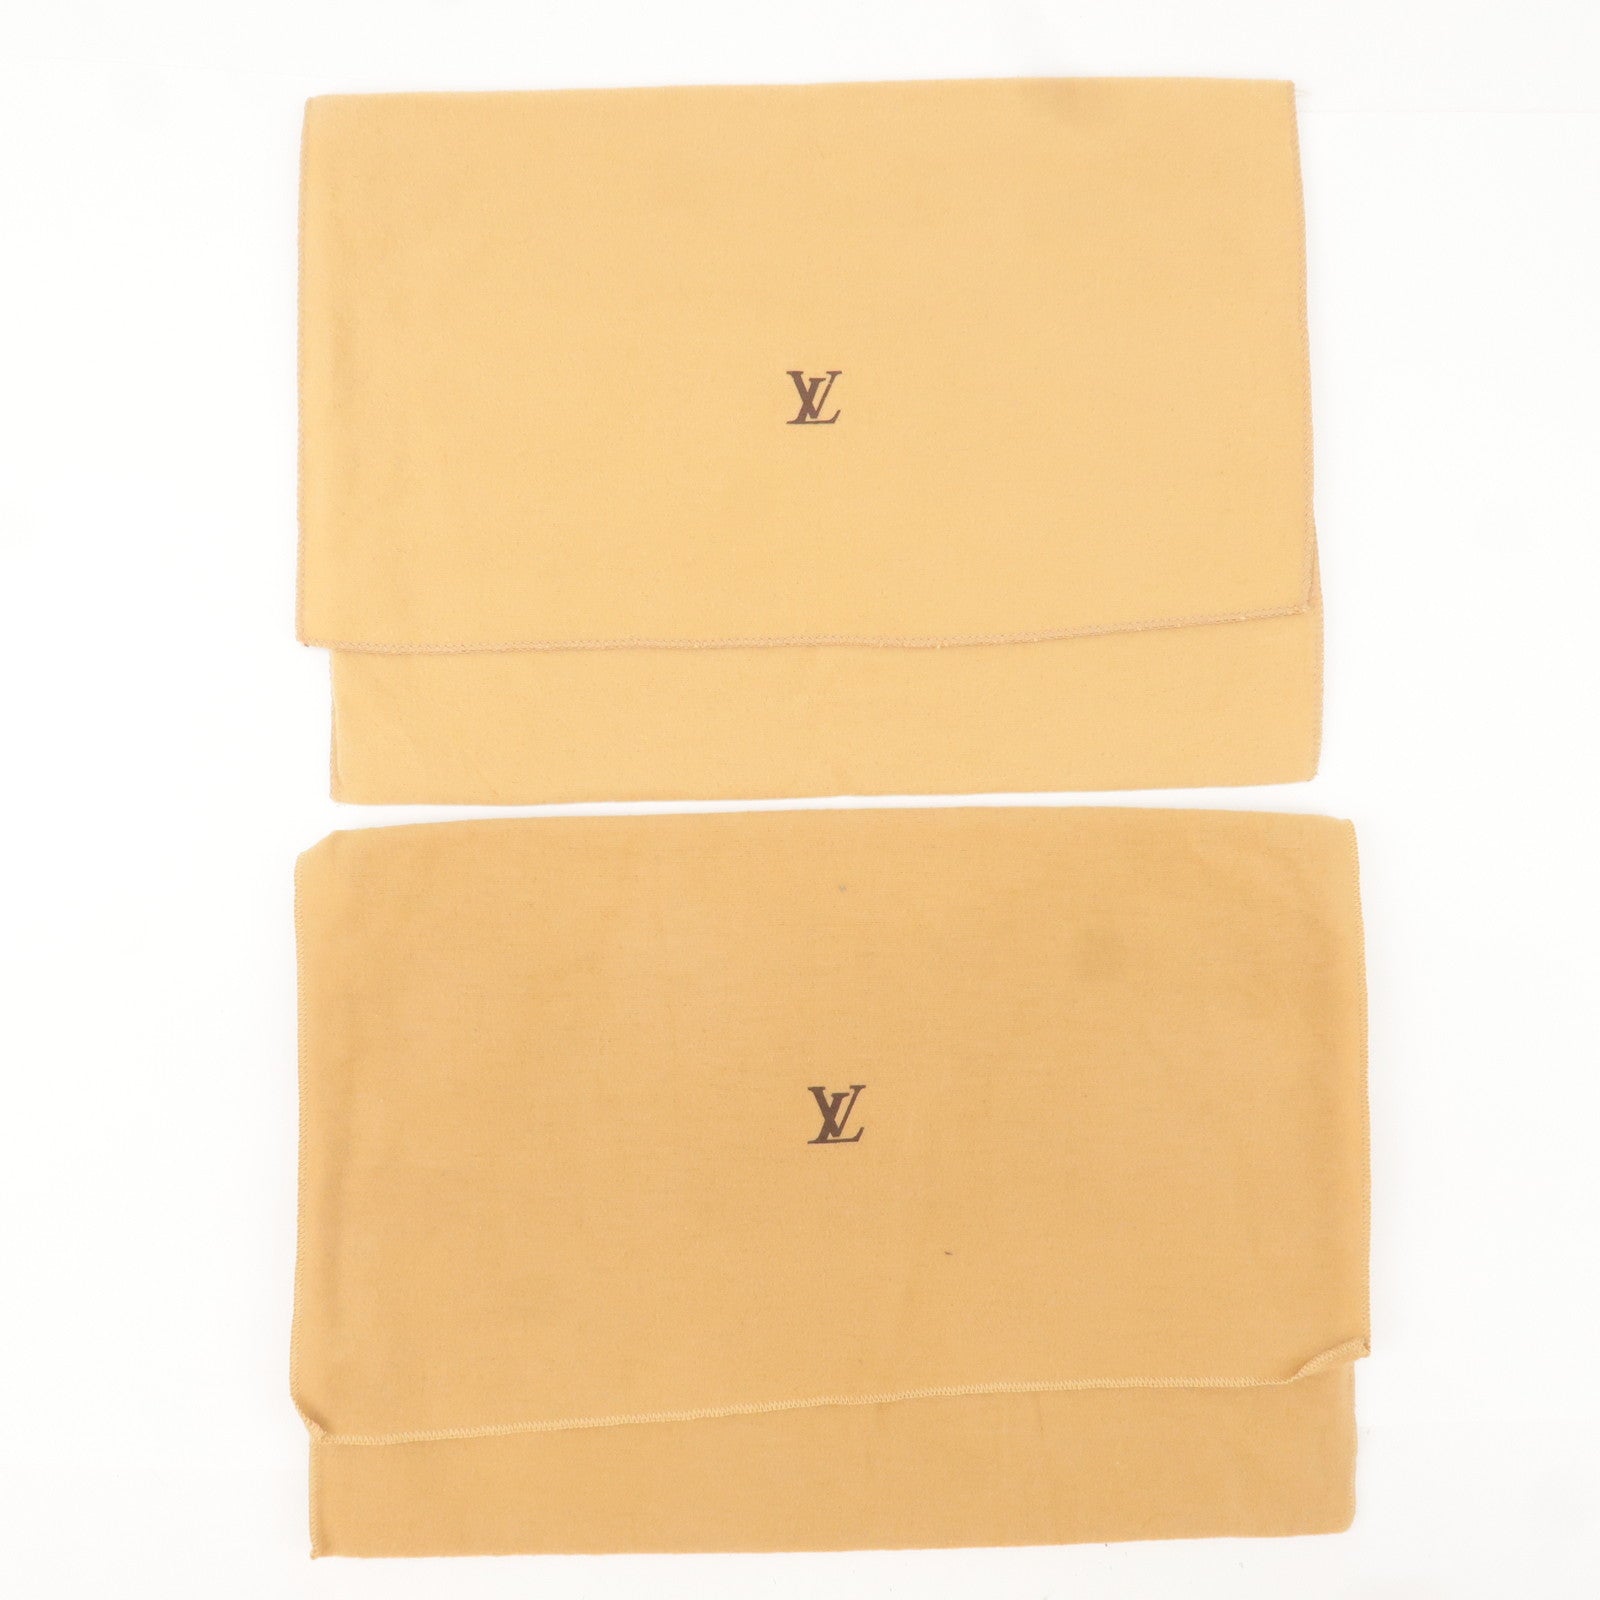 Louis Vuitton Wallet Dust bag